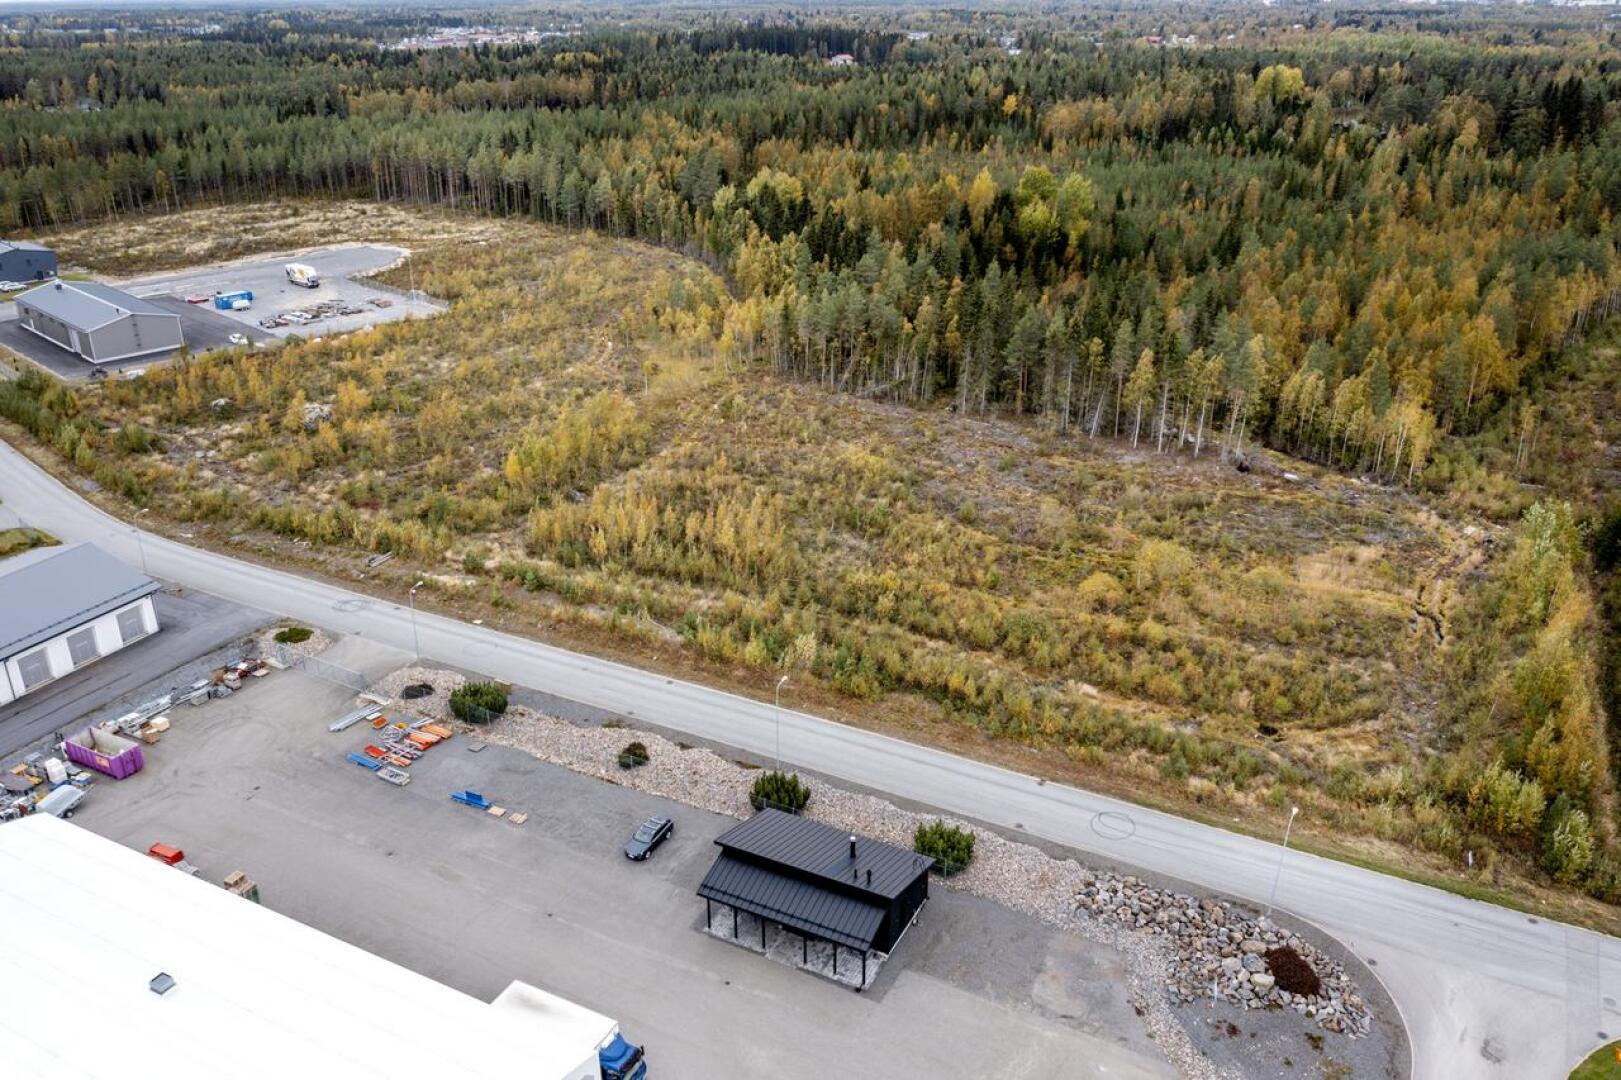 Topparinmäen paikka sijaitsee Sokojantien ja Jyväskyläntien välissä. Paikan naapurissa on Topparinmäen teollisuusalue, jossa on monipuolista yritystoimintaa. Kuva on syyskuulta 2021.